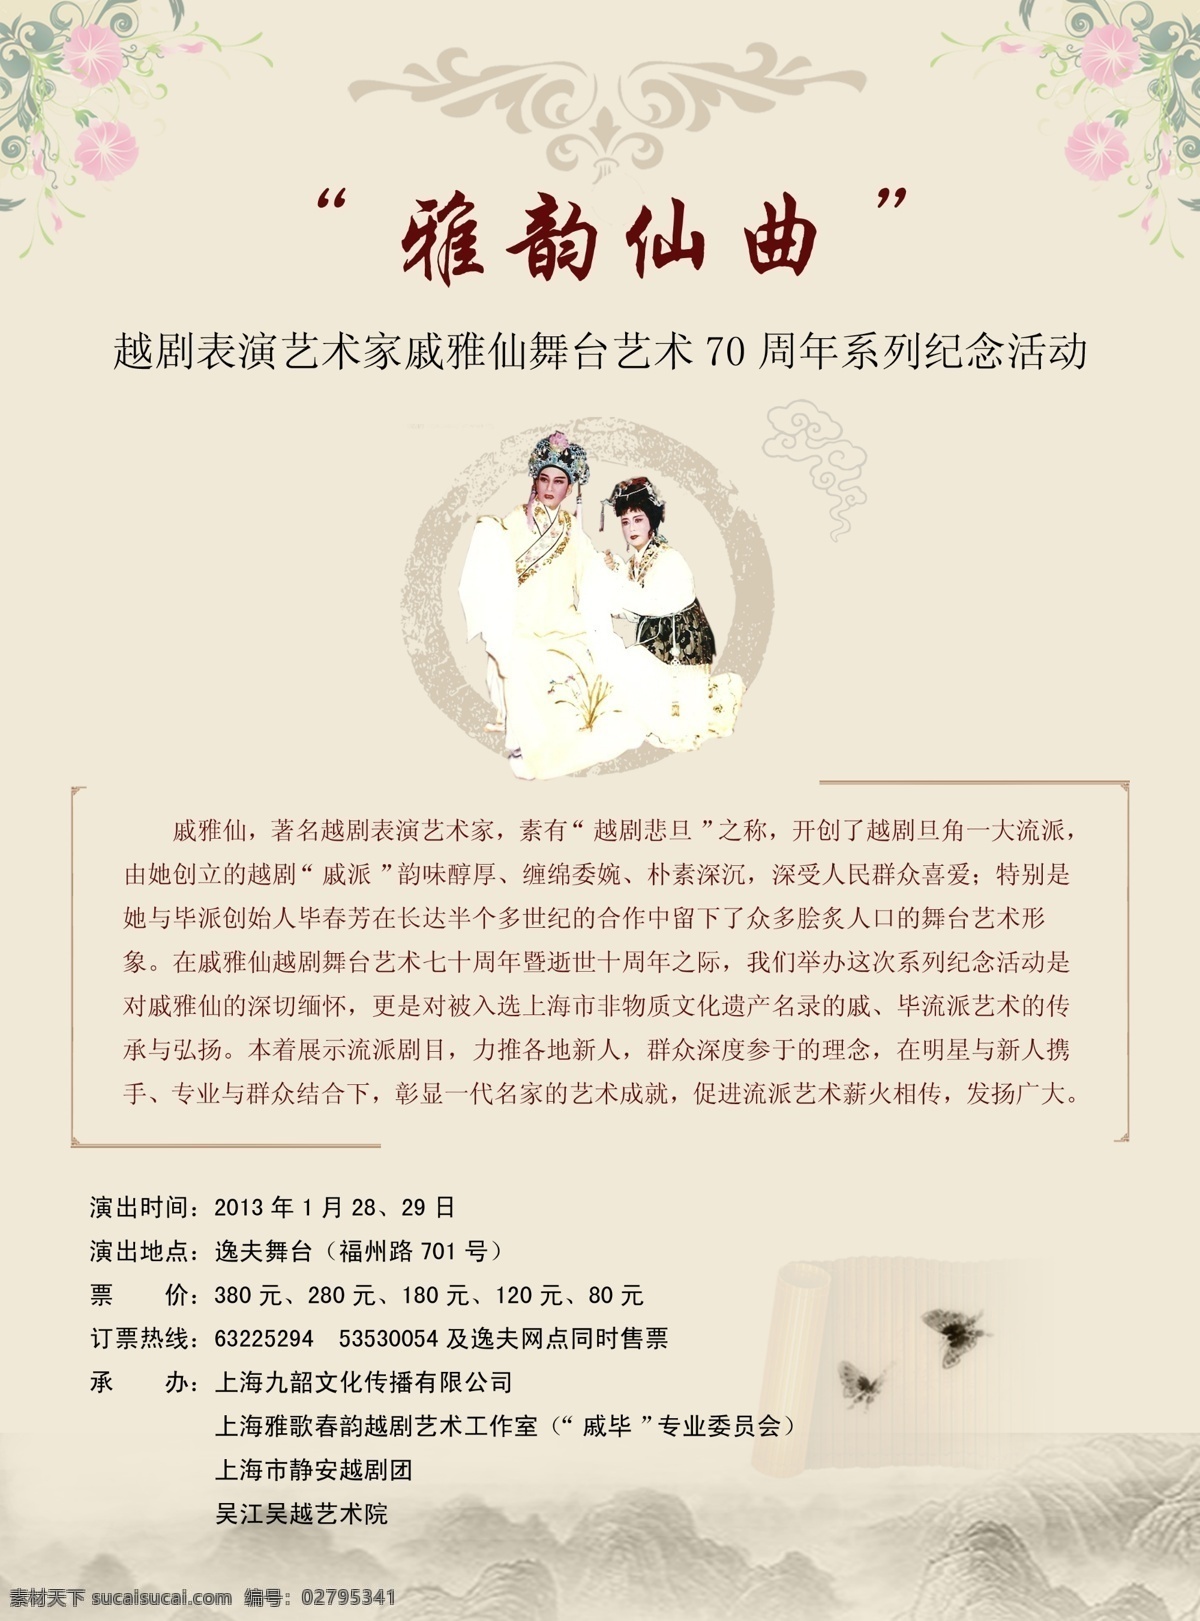 雅韵仙曲 戏剧 梁祝 古典中国风 水墨山峰 花朵 广告设计模板 源文件